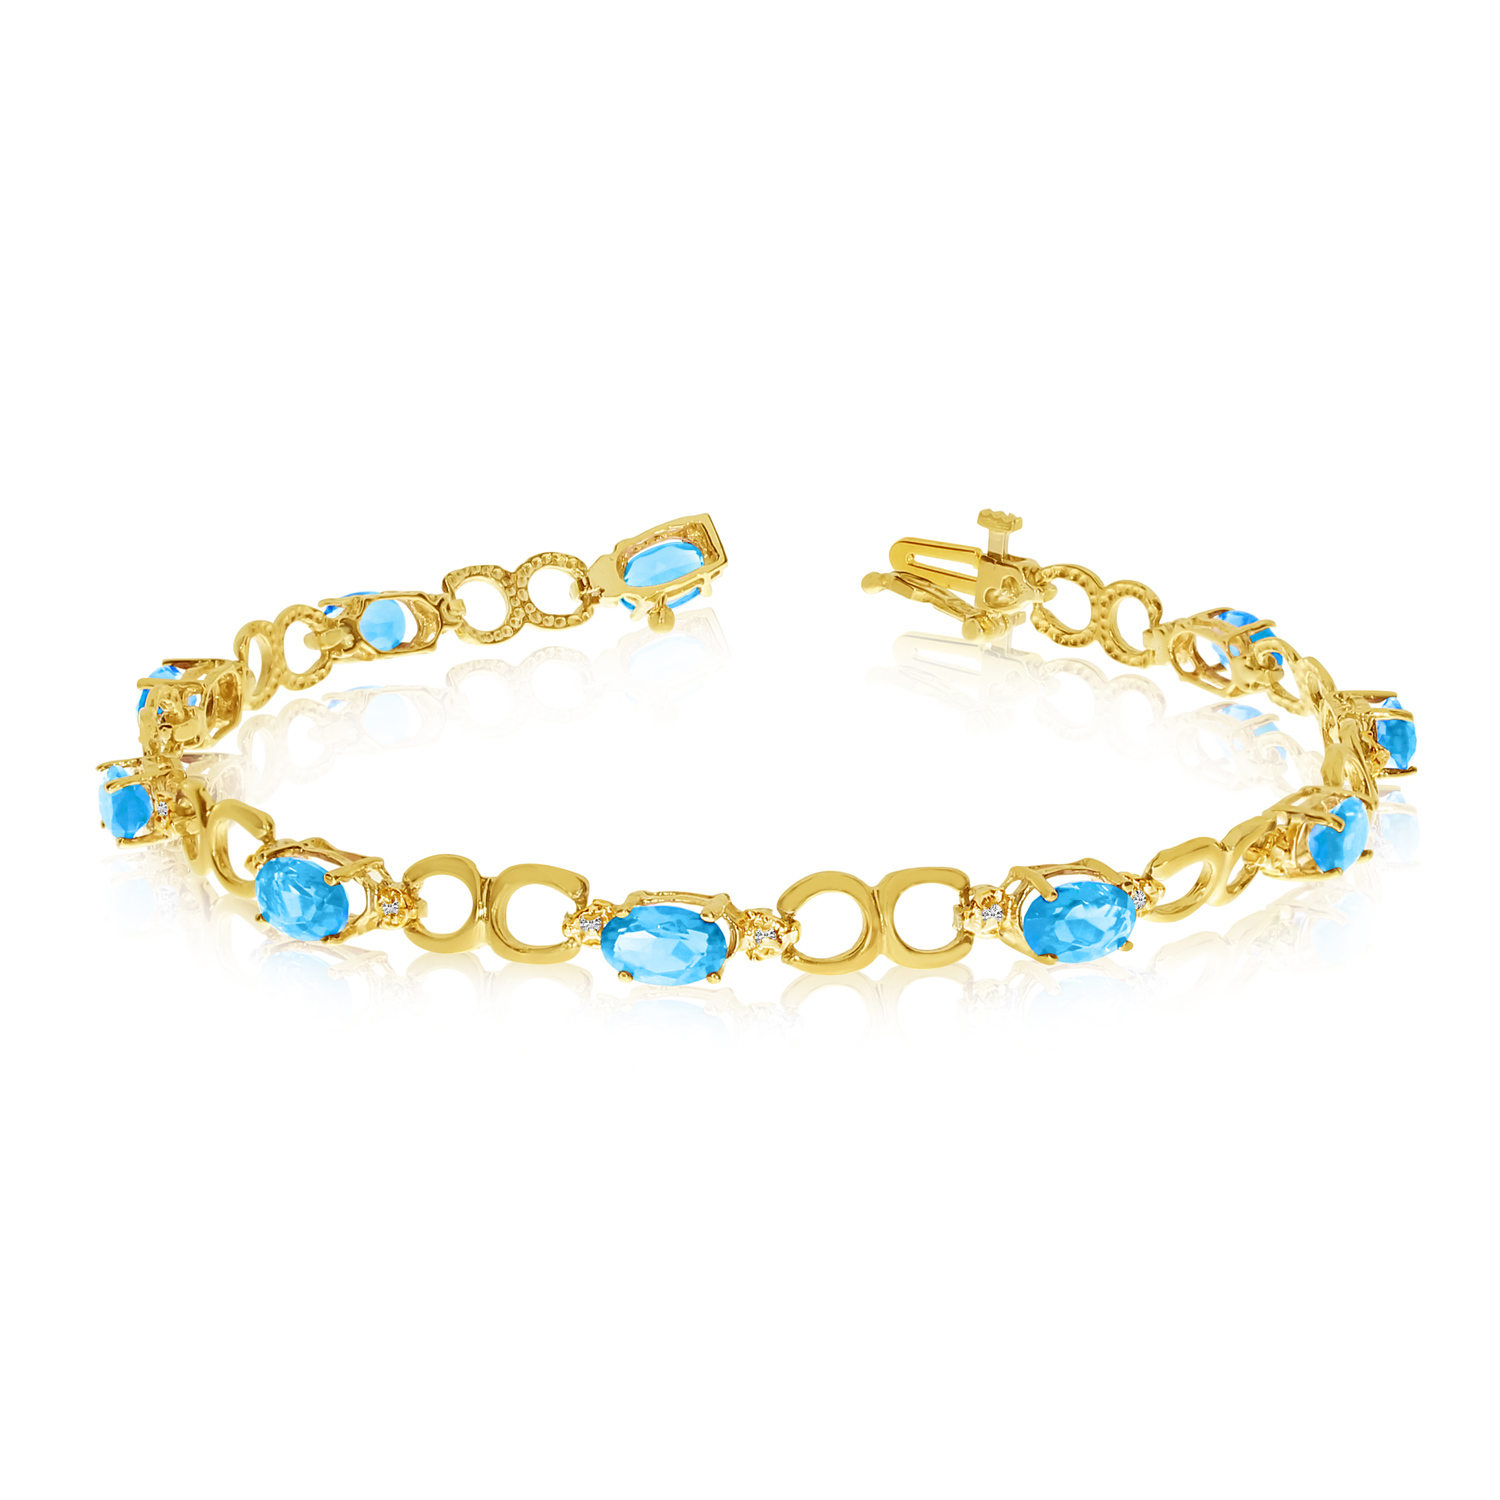 14K Yellow Gold Oval Blue Topaz and Diamond Bracelet